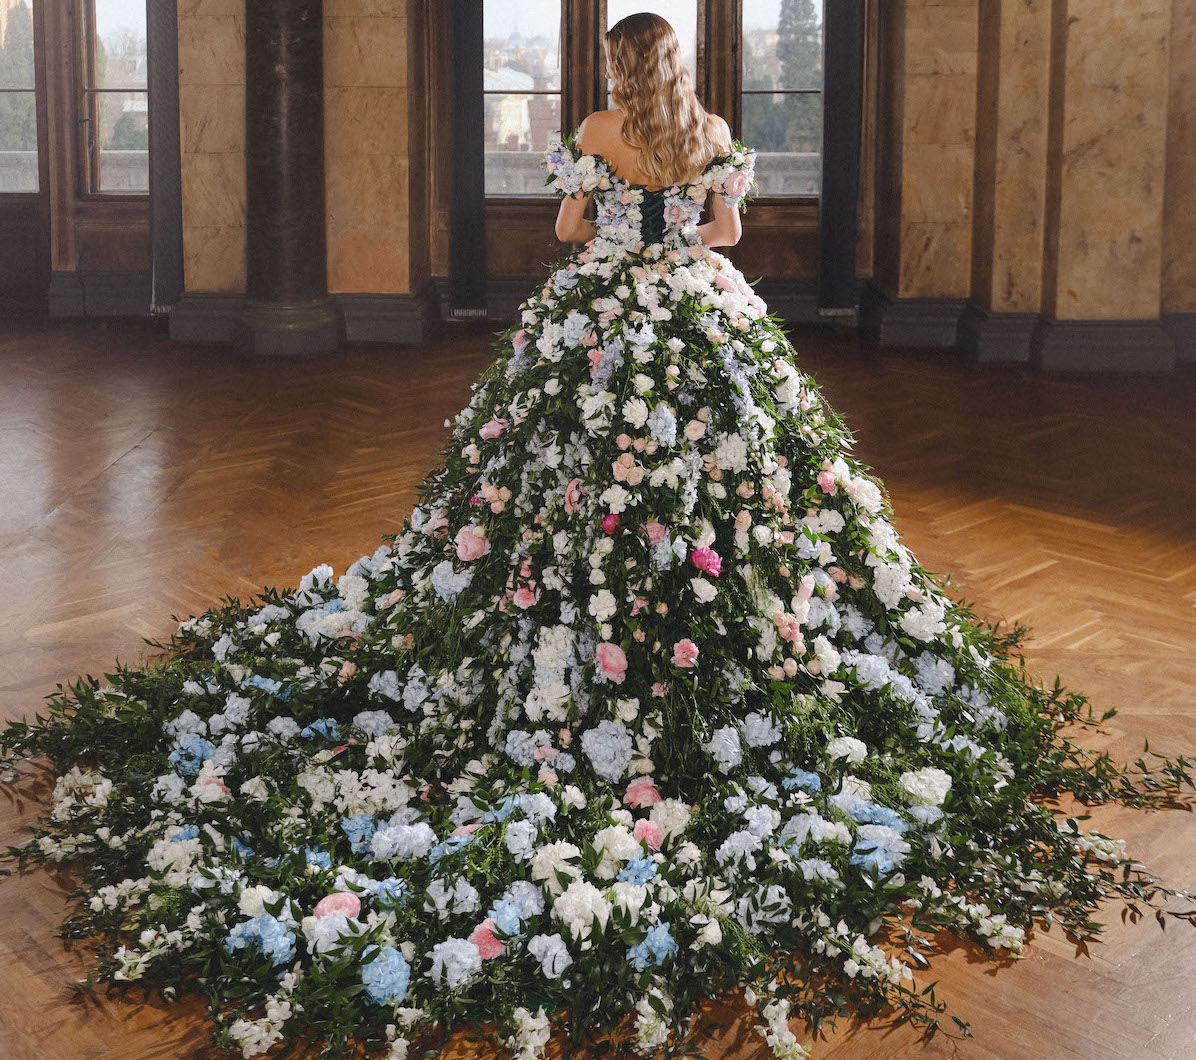 Природа в моді: Vladiyan Royal здивував світ унікальною весільною сукнею з живих квітів